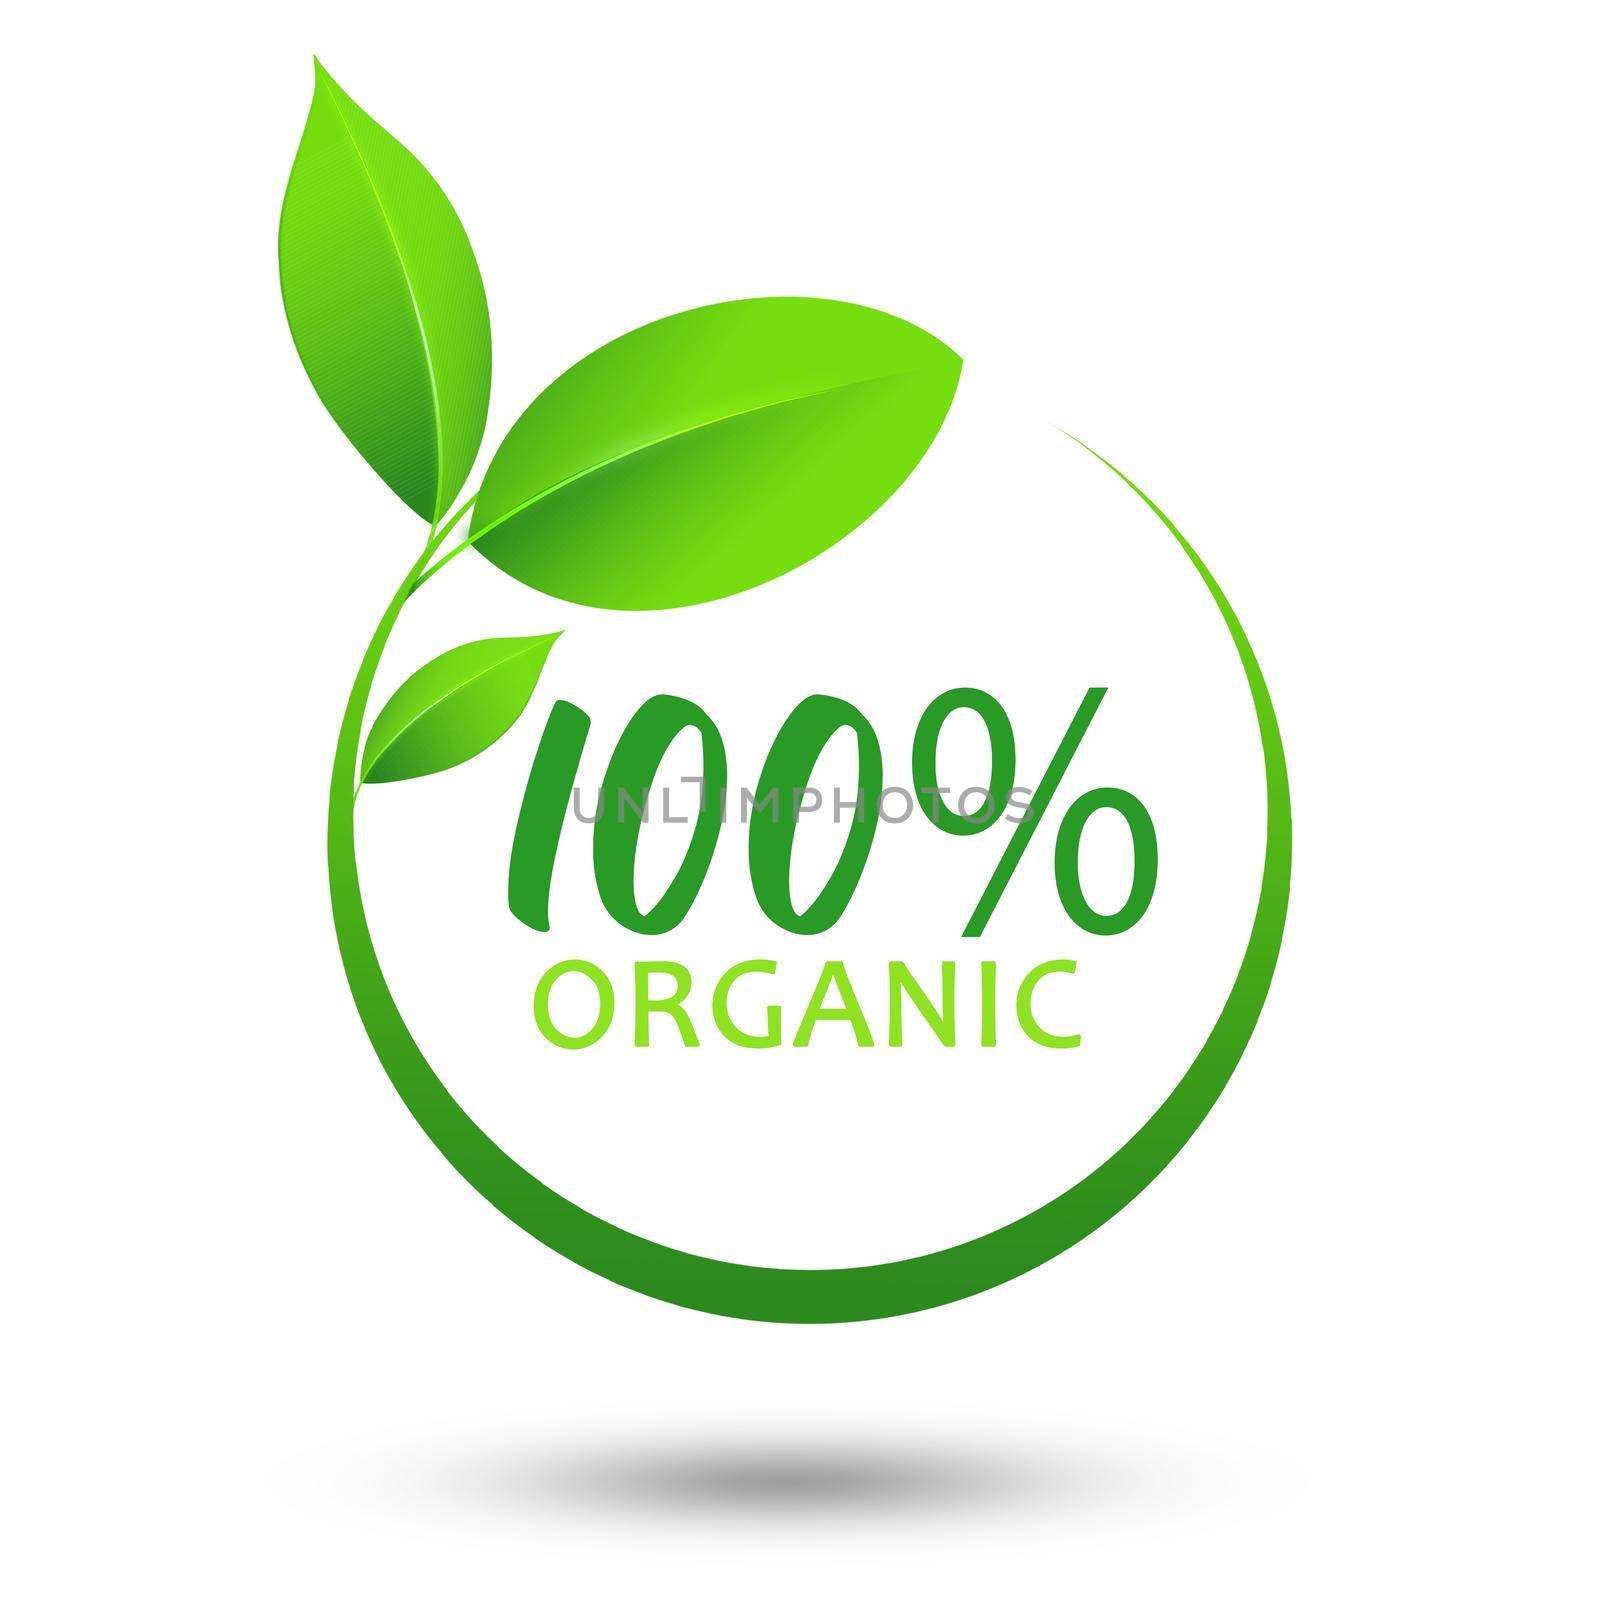 100% organic logo design isolated on white background.illustration